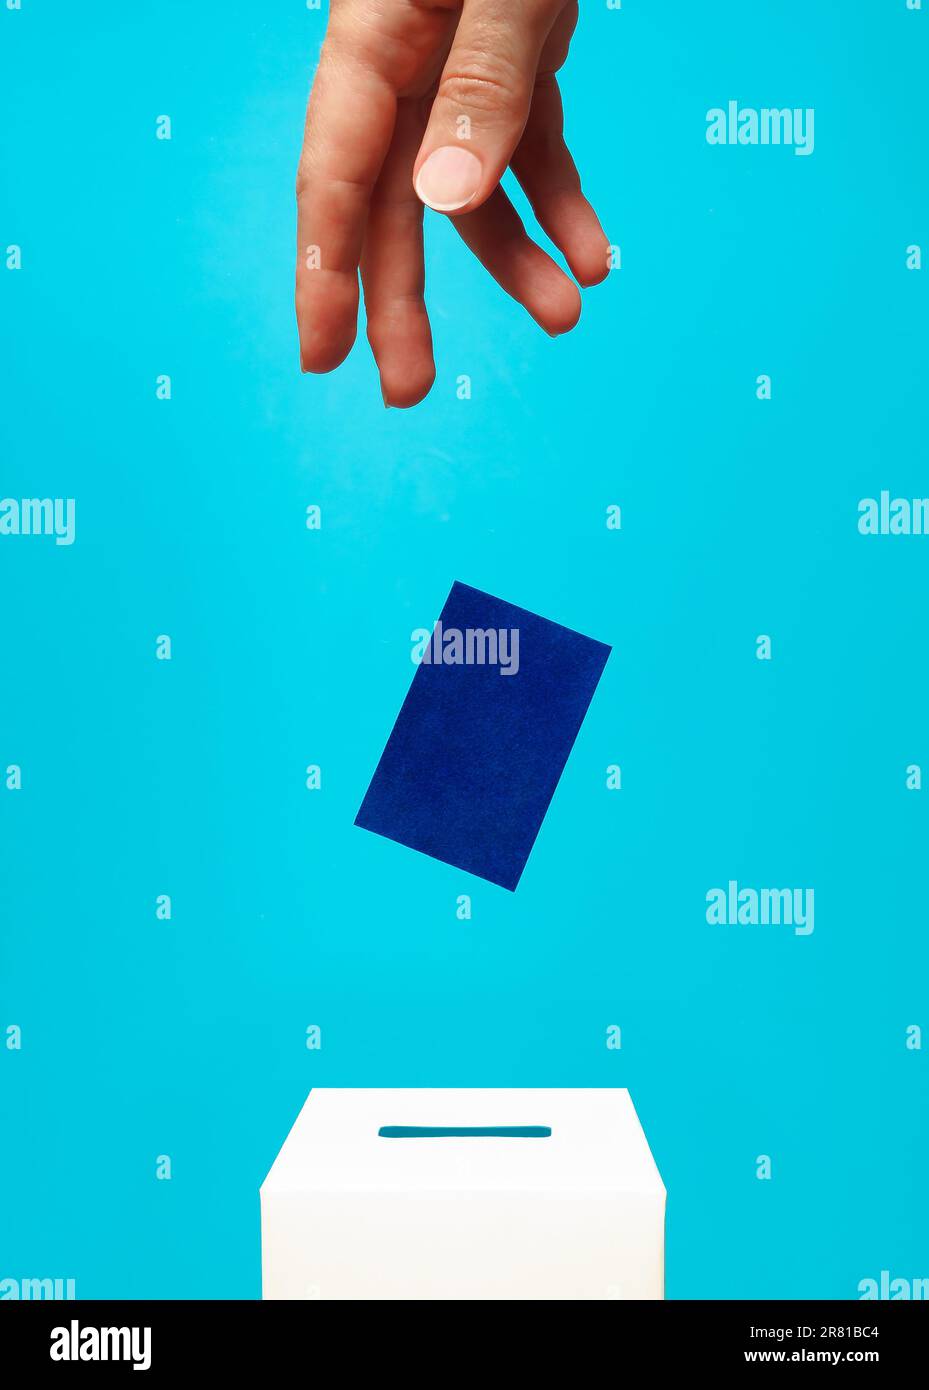 concept d'élection - la main d'une femme met une carte bleue dans une boîte de vote blanche avec une fente, le fond est bleu, la lévitation Banque D'Images